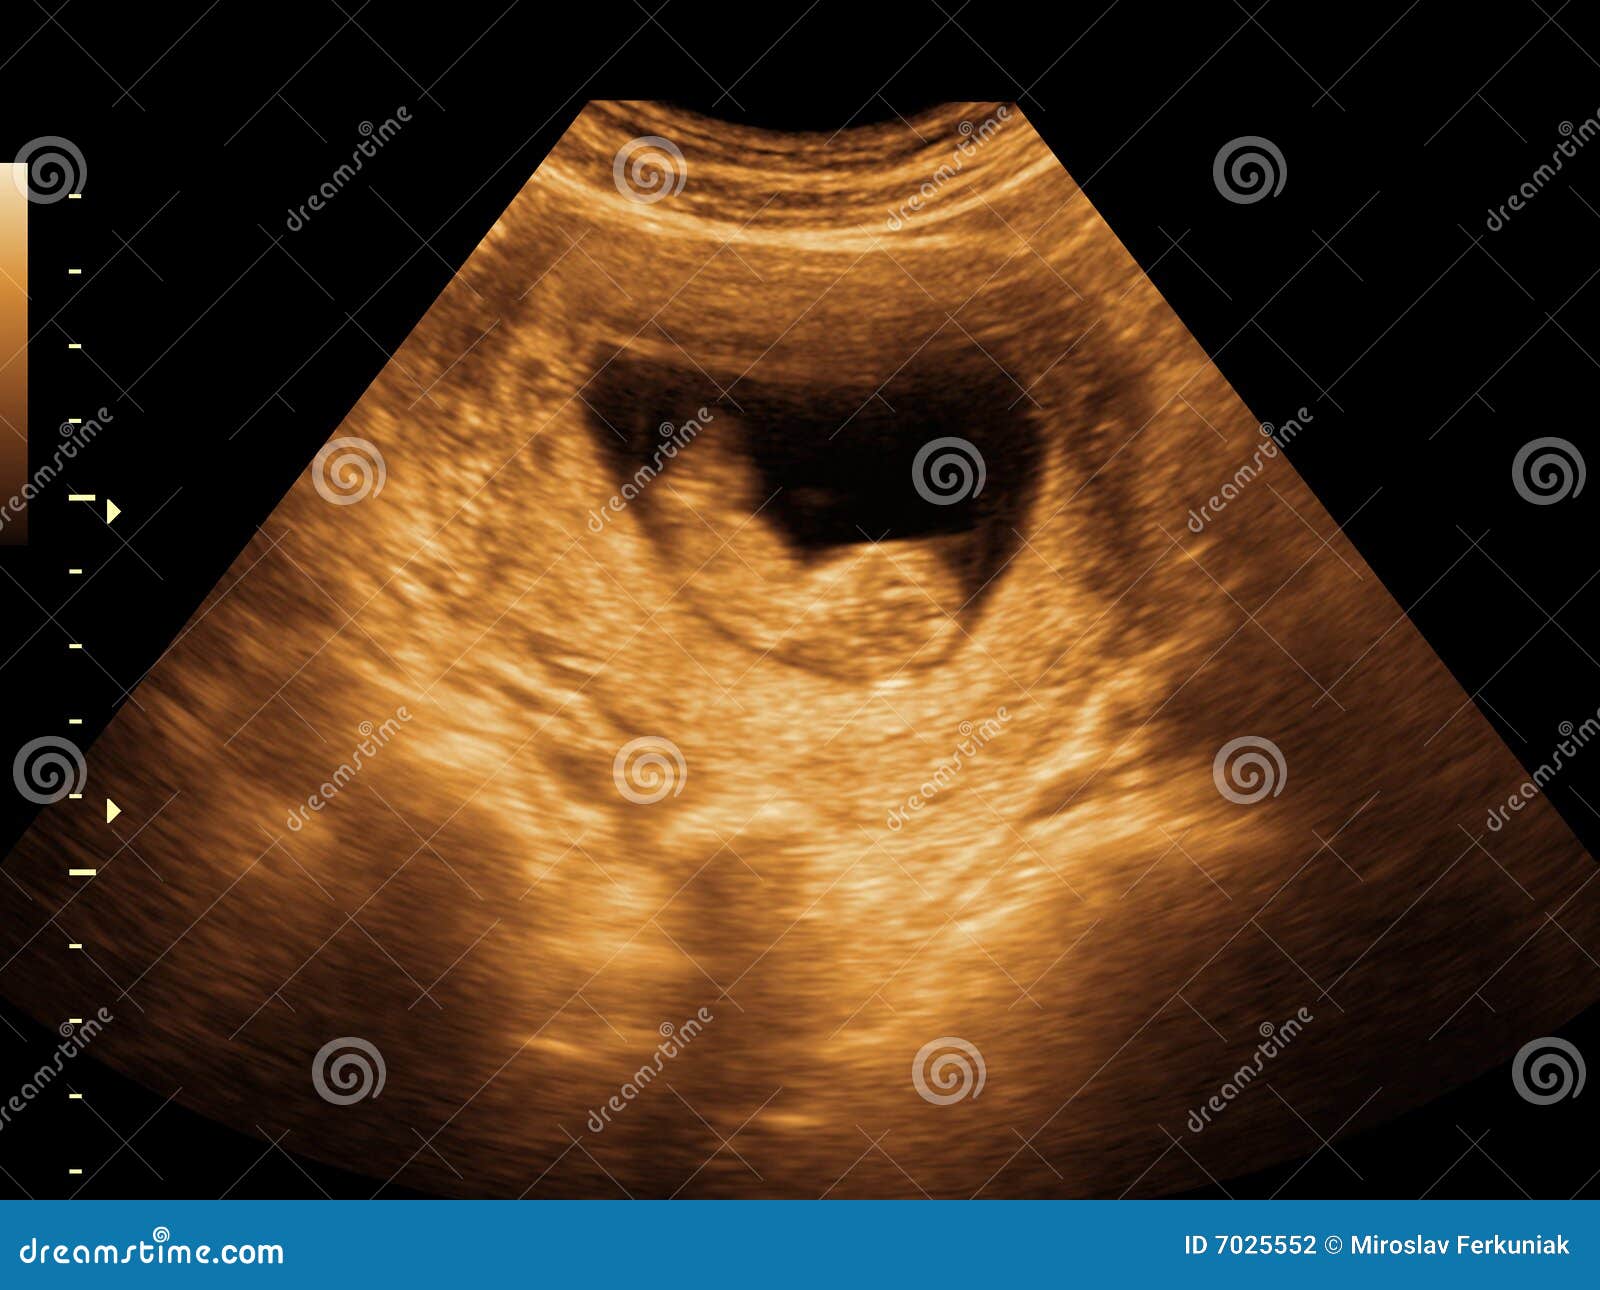 fetus ultrasound